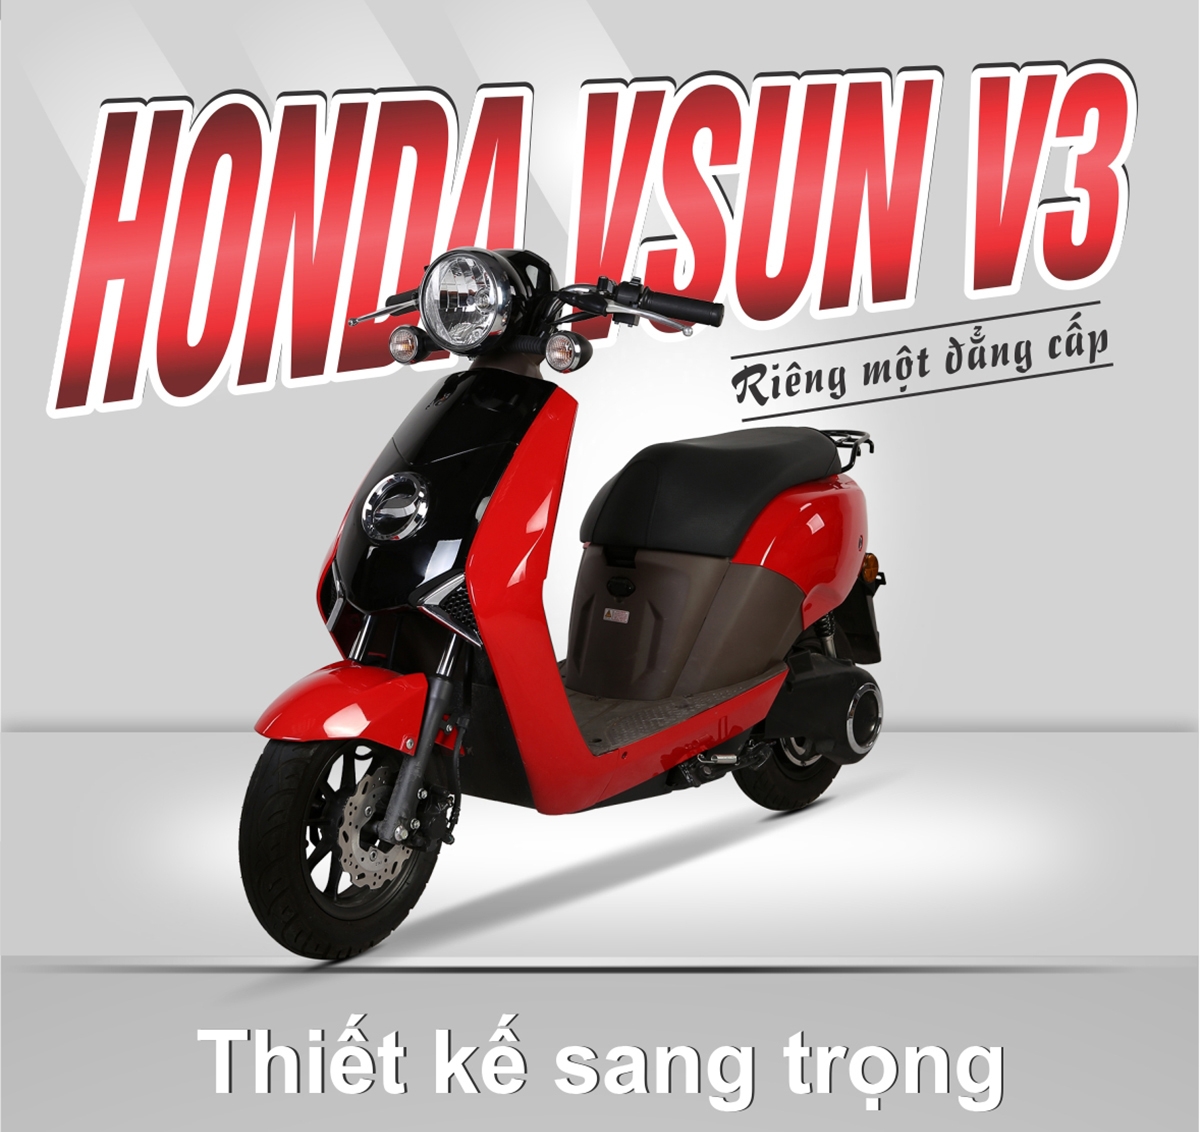 Xe máy điện Honda Vsun V3